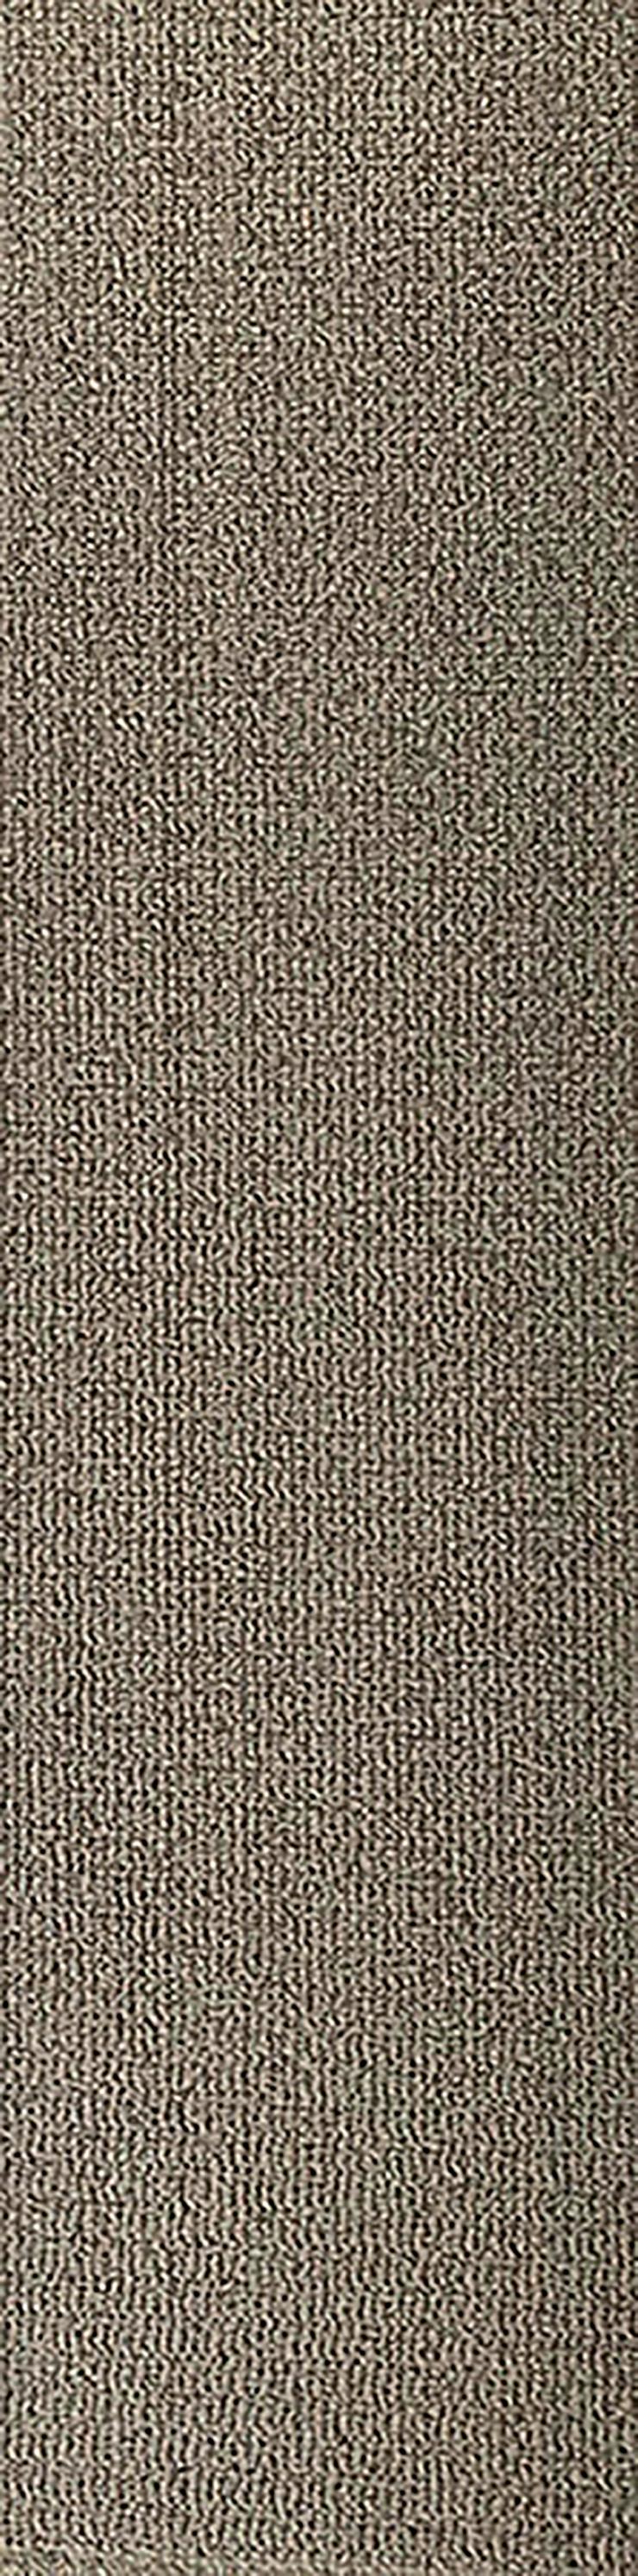 Schöne 'Laminat' Teppichfliesen 25x100cm Sehr Decorativ - Teppiche - Bild 5